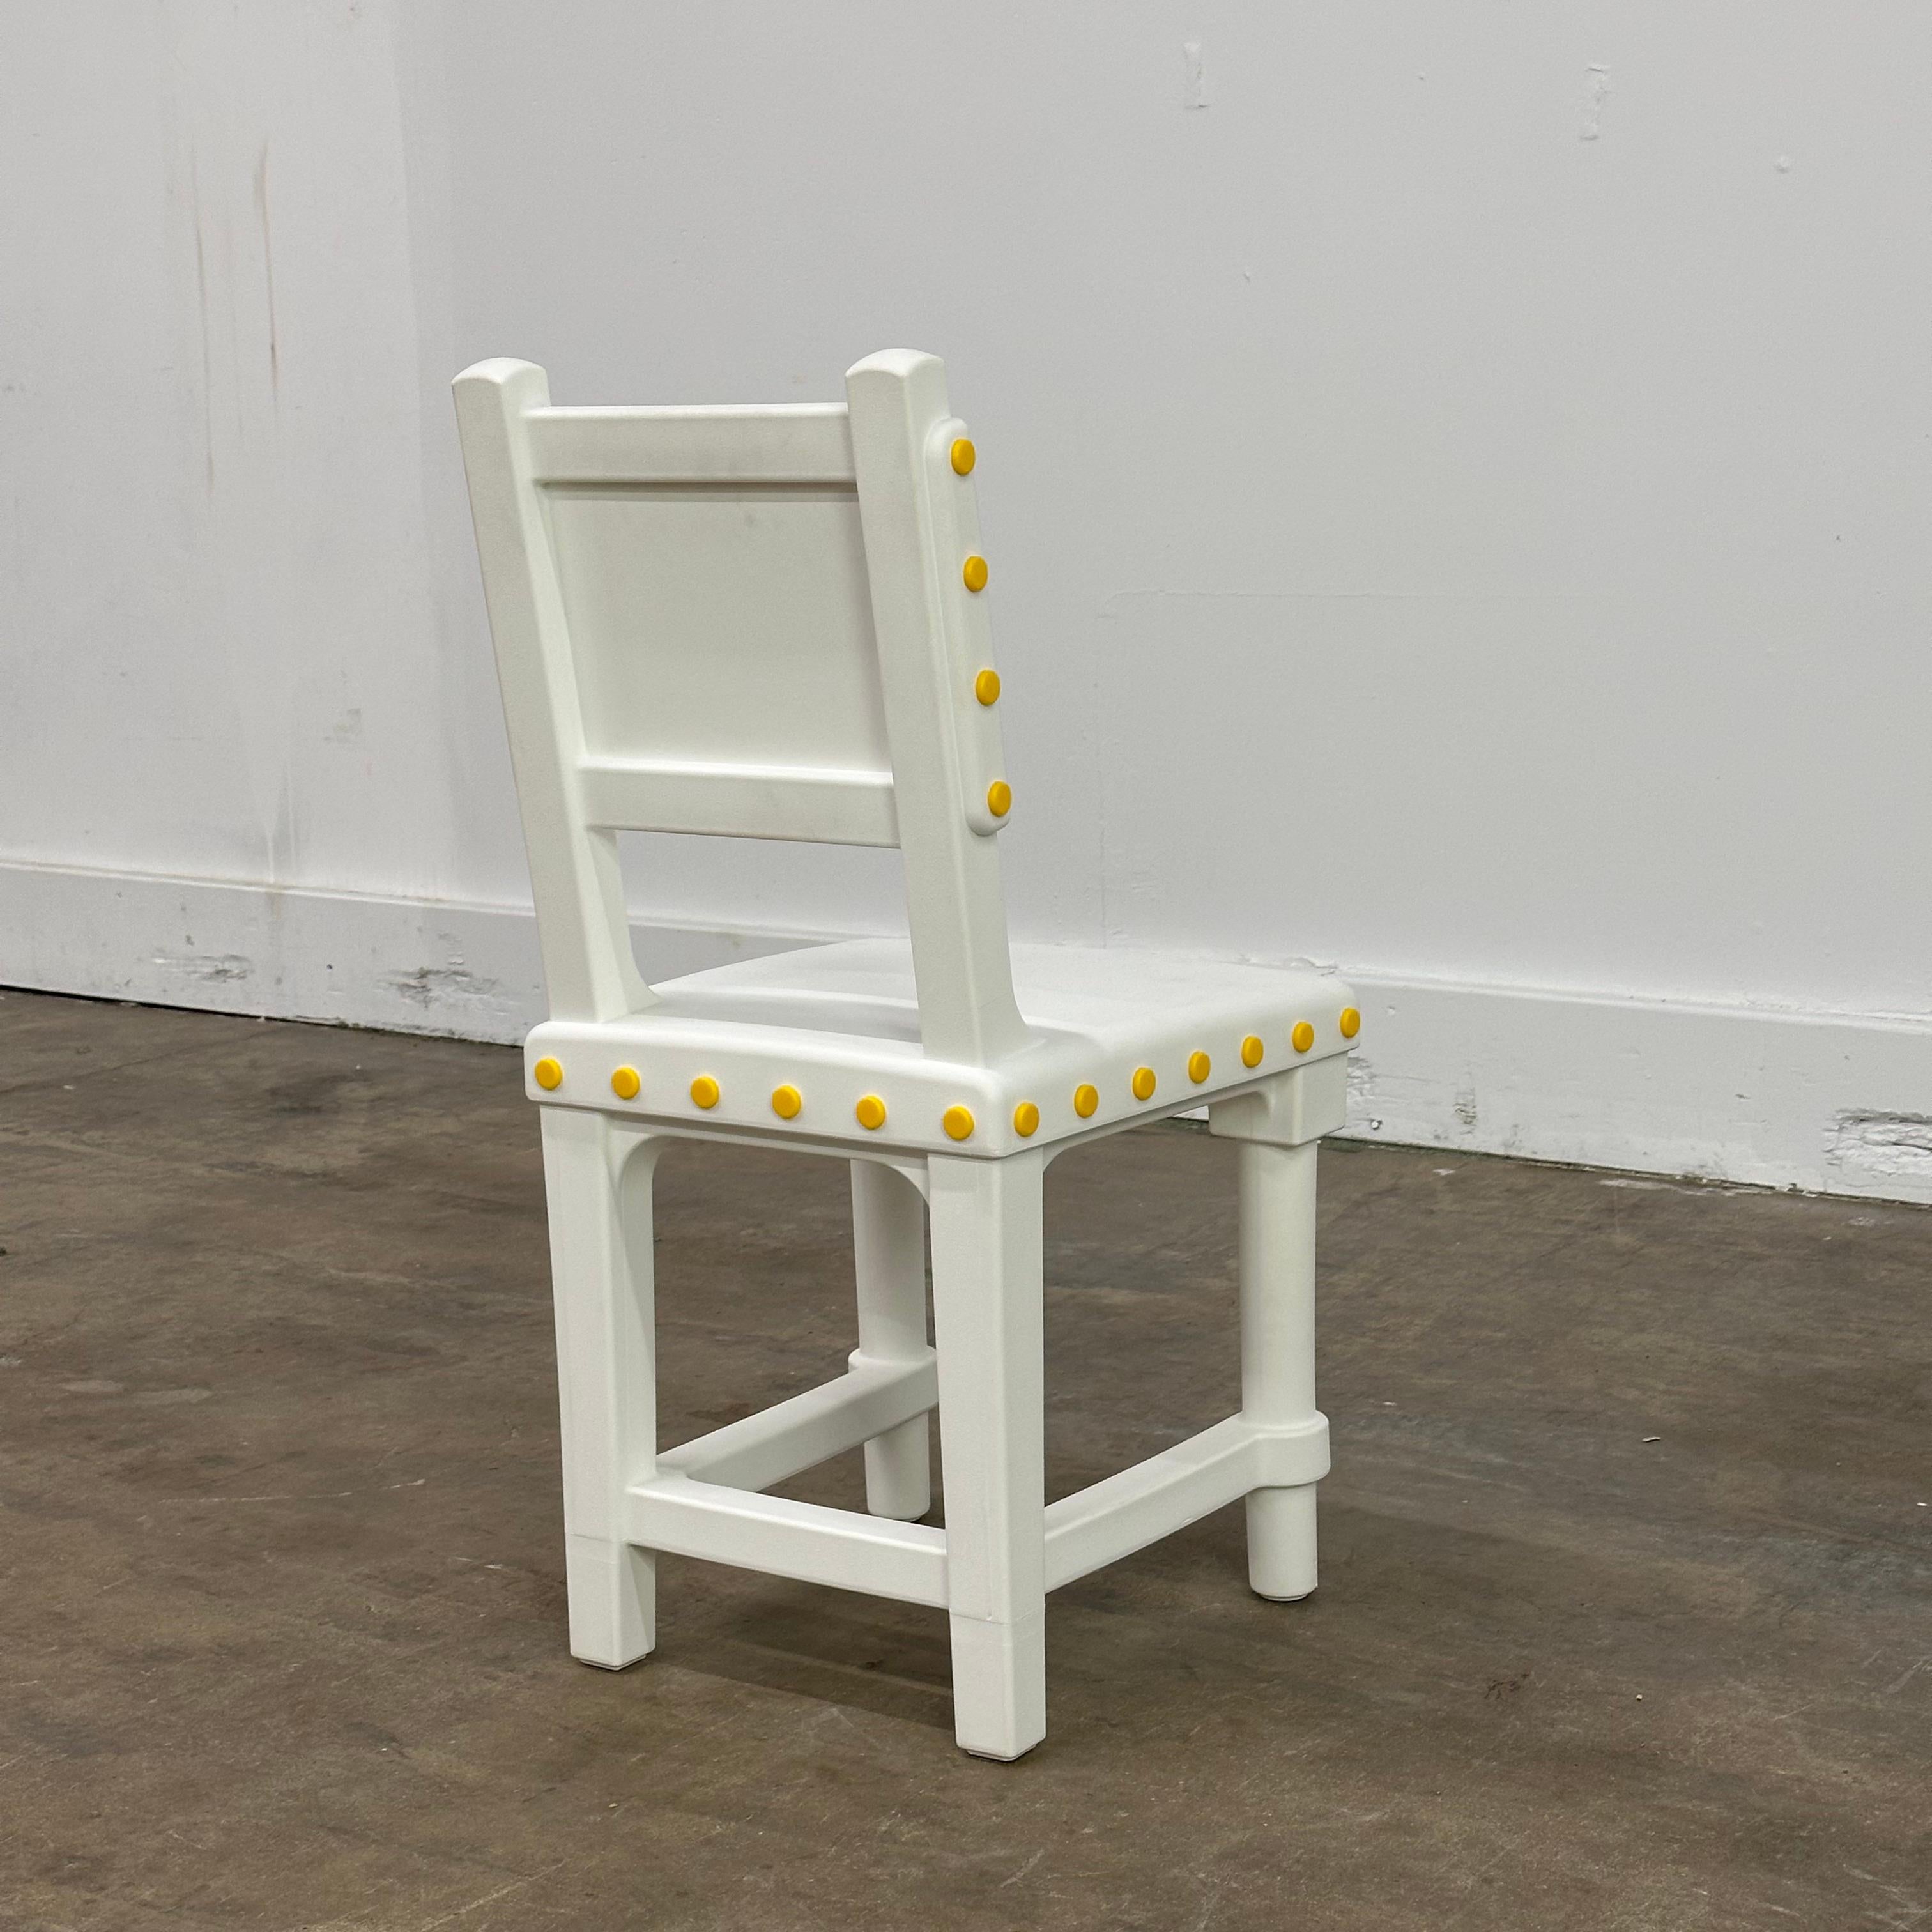 XXIe siècle et contemporain Gothic Chair by Studio Job for Moooi, Netherlands, c.2010s en vente